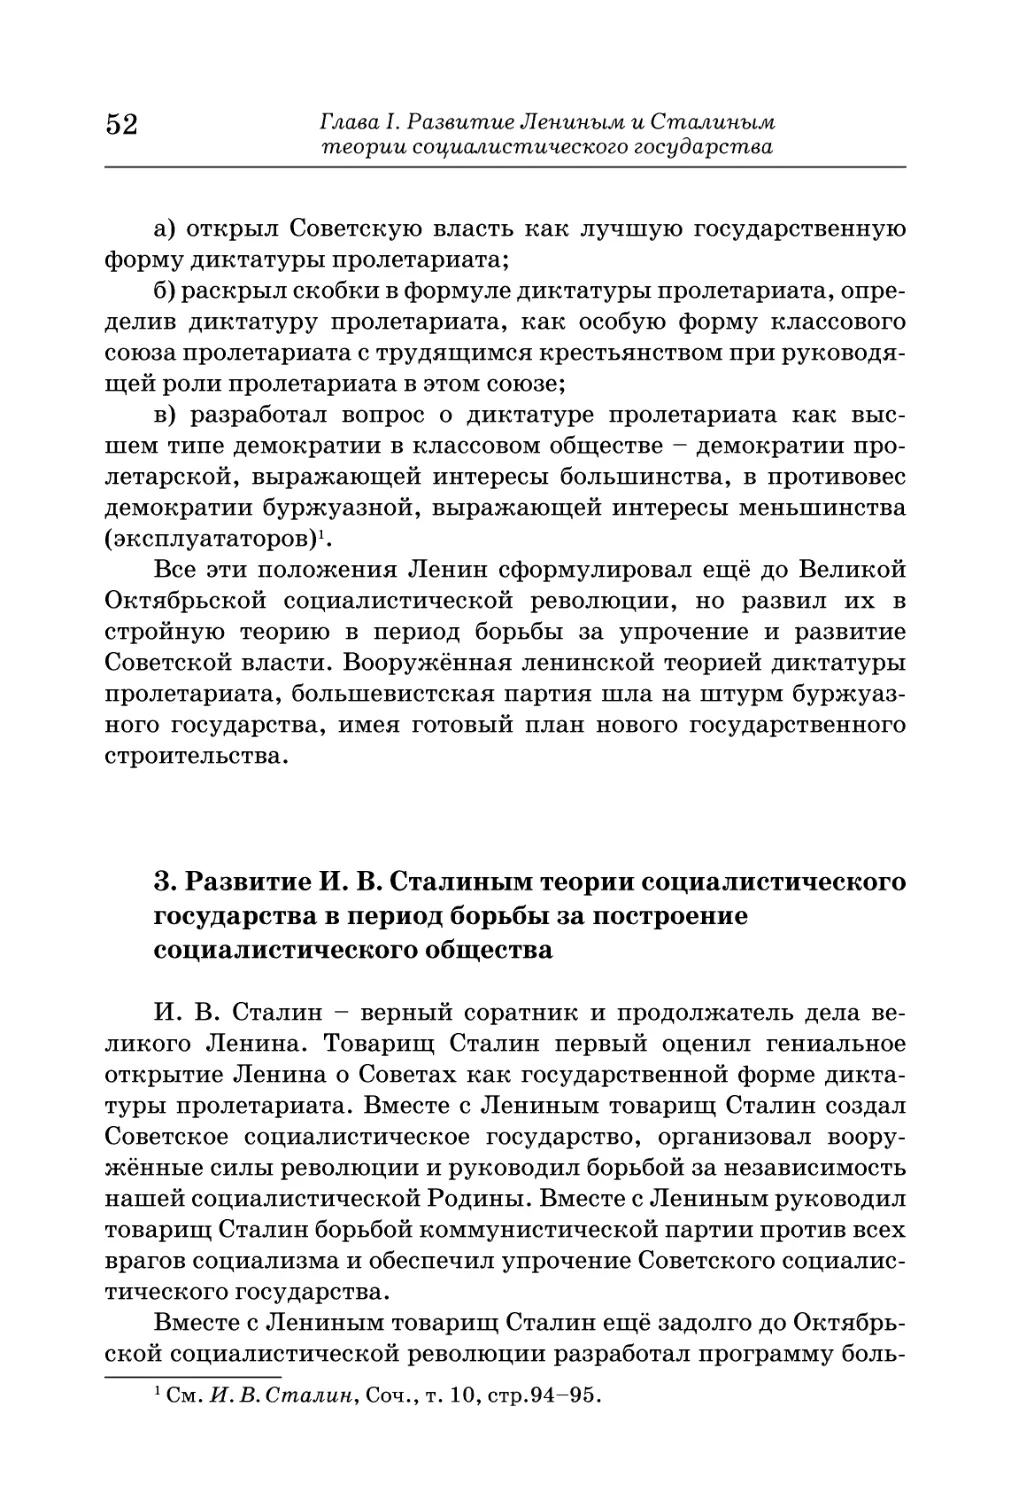 3.  Развитие  И.В.  Сталиным  теории  социалистического государства  в  период  борьбы  за  построение  социалистического  общества